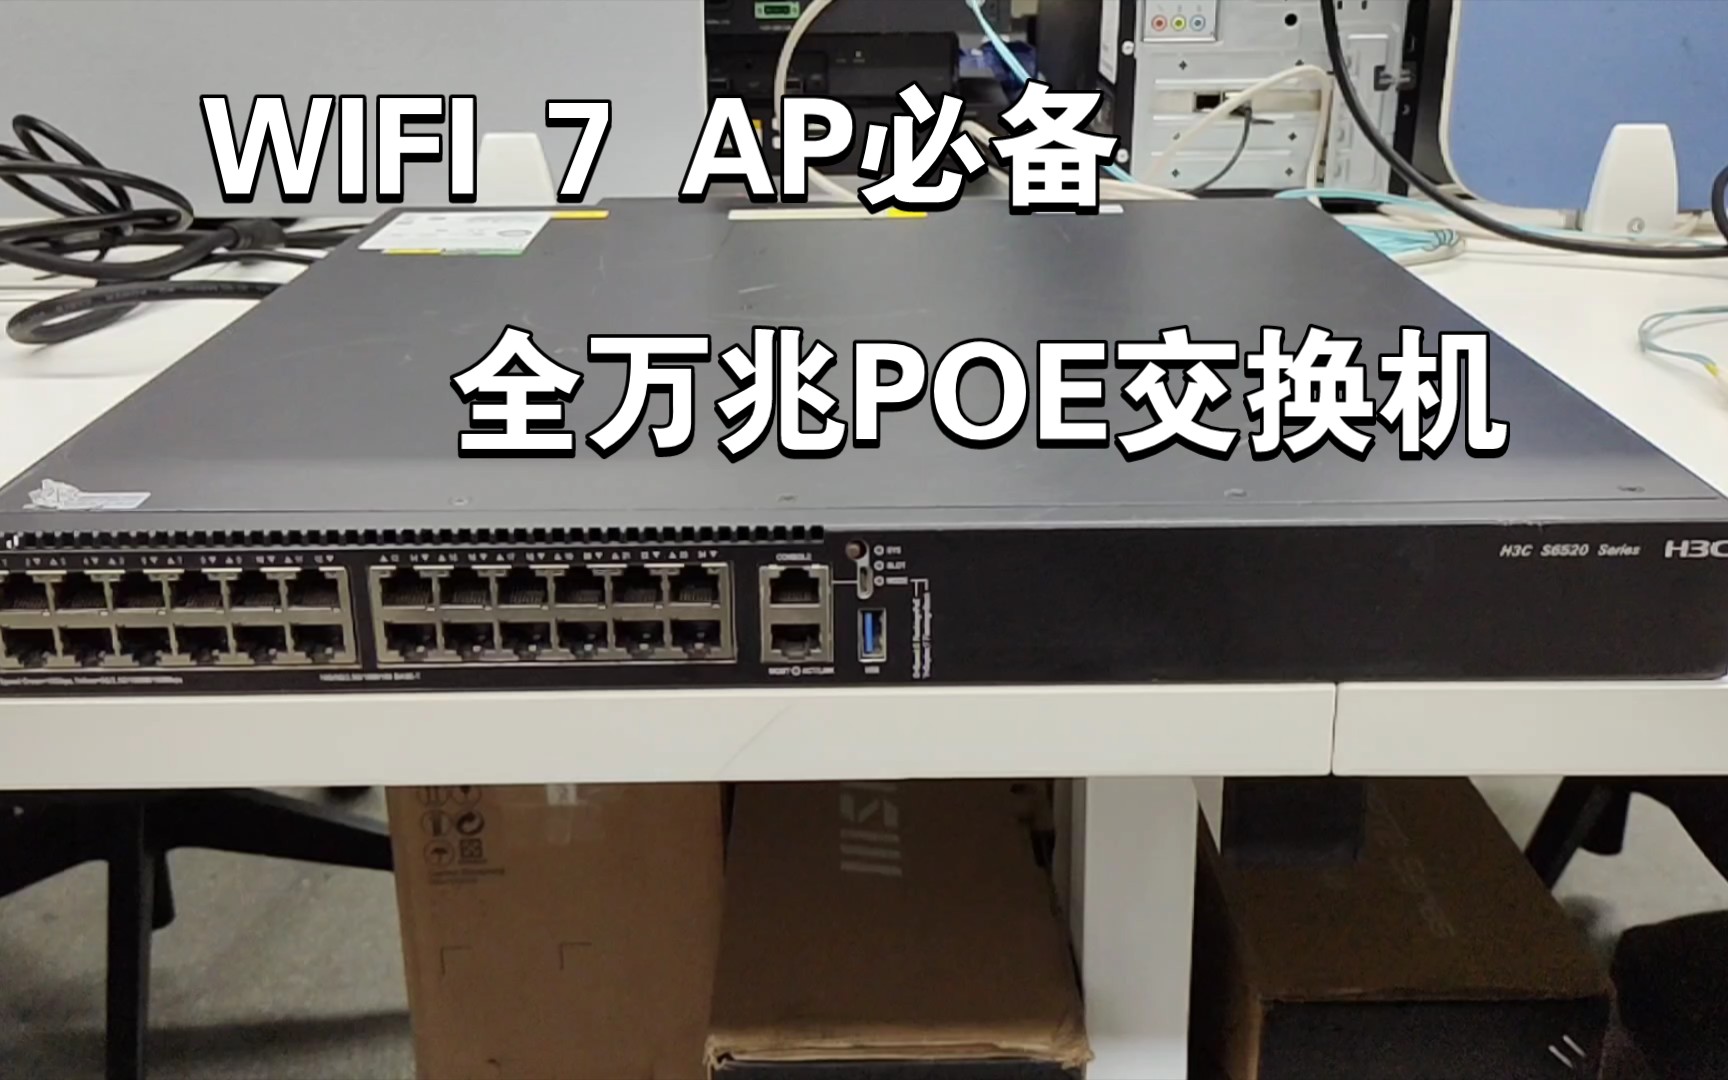 WIFI 7 AP必备 全万兆POE交换机 H3C S6520X-26XC